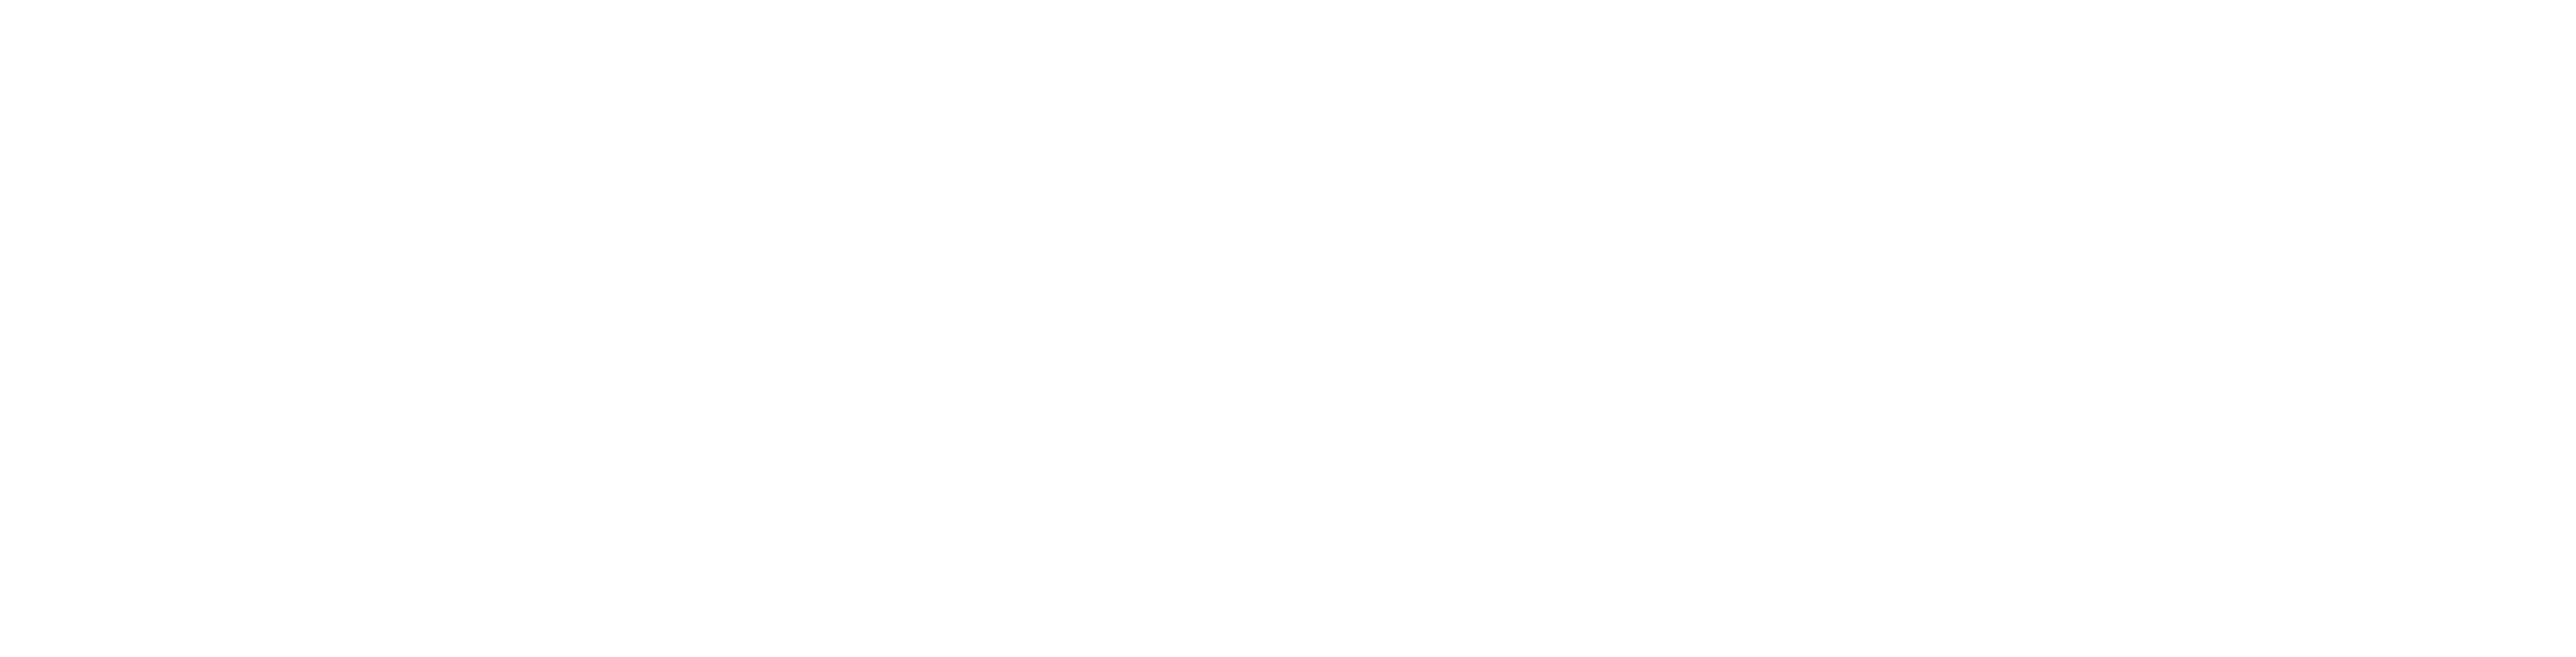 LeveragedSalesCentral_Logo_NoTagline_White